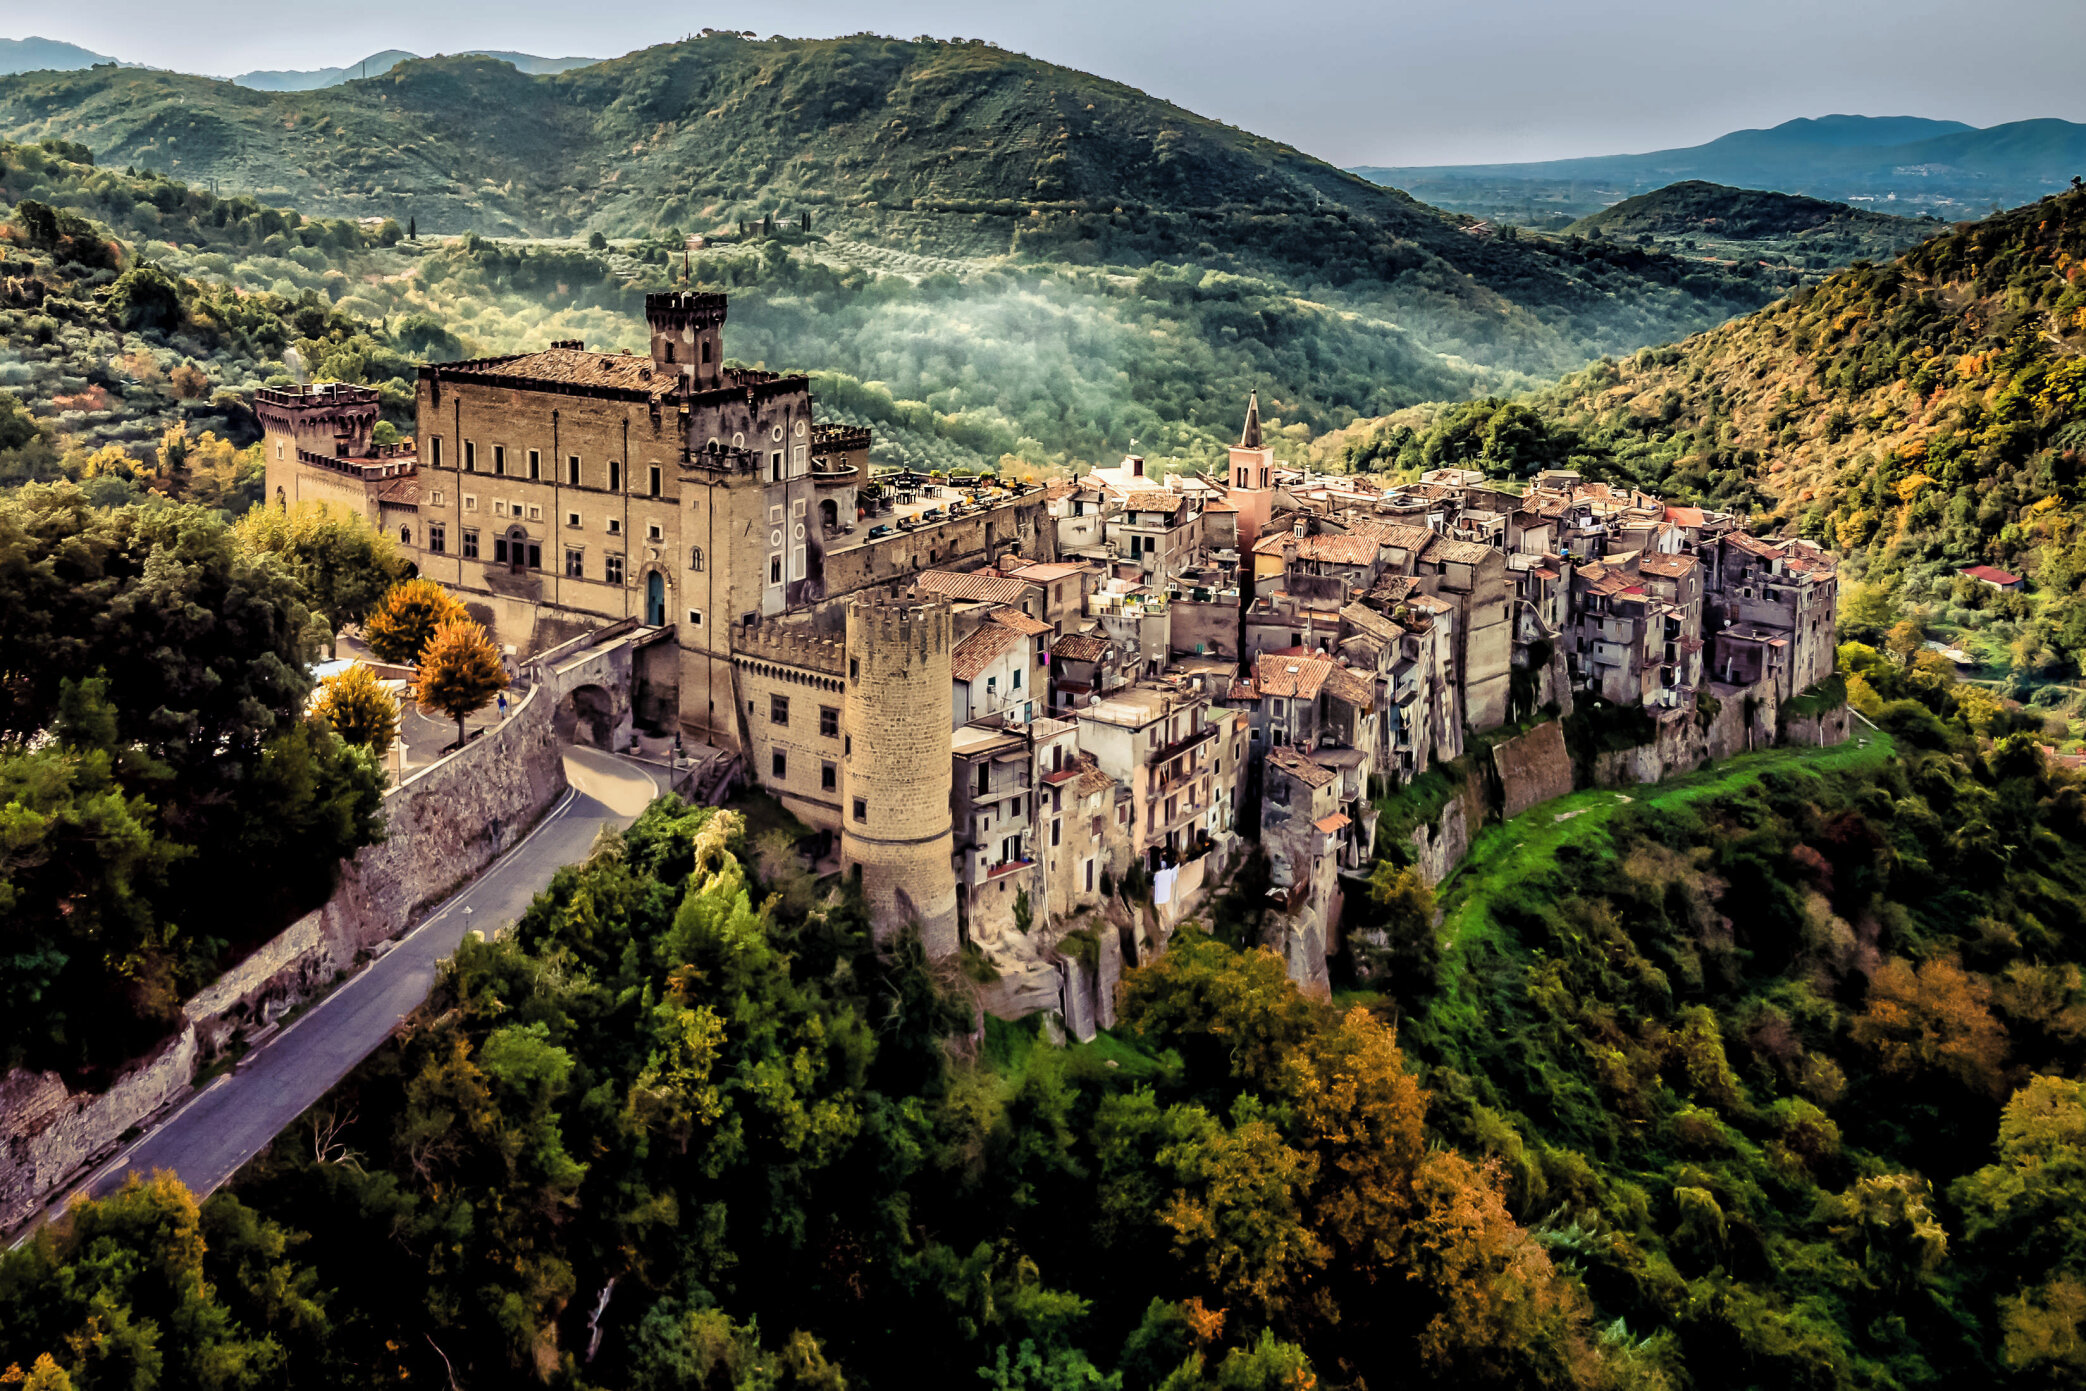 Castello Brancaccio⁣
📸 @eppelfotografie⁣
📍 #CastelloBrancaccio